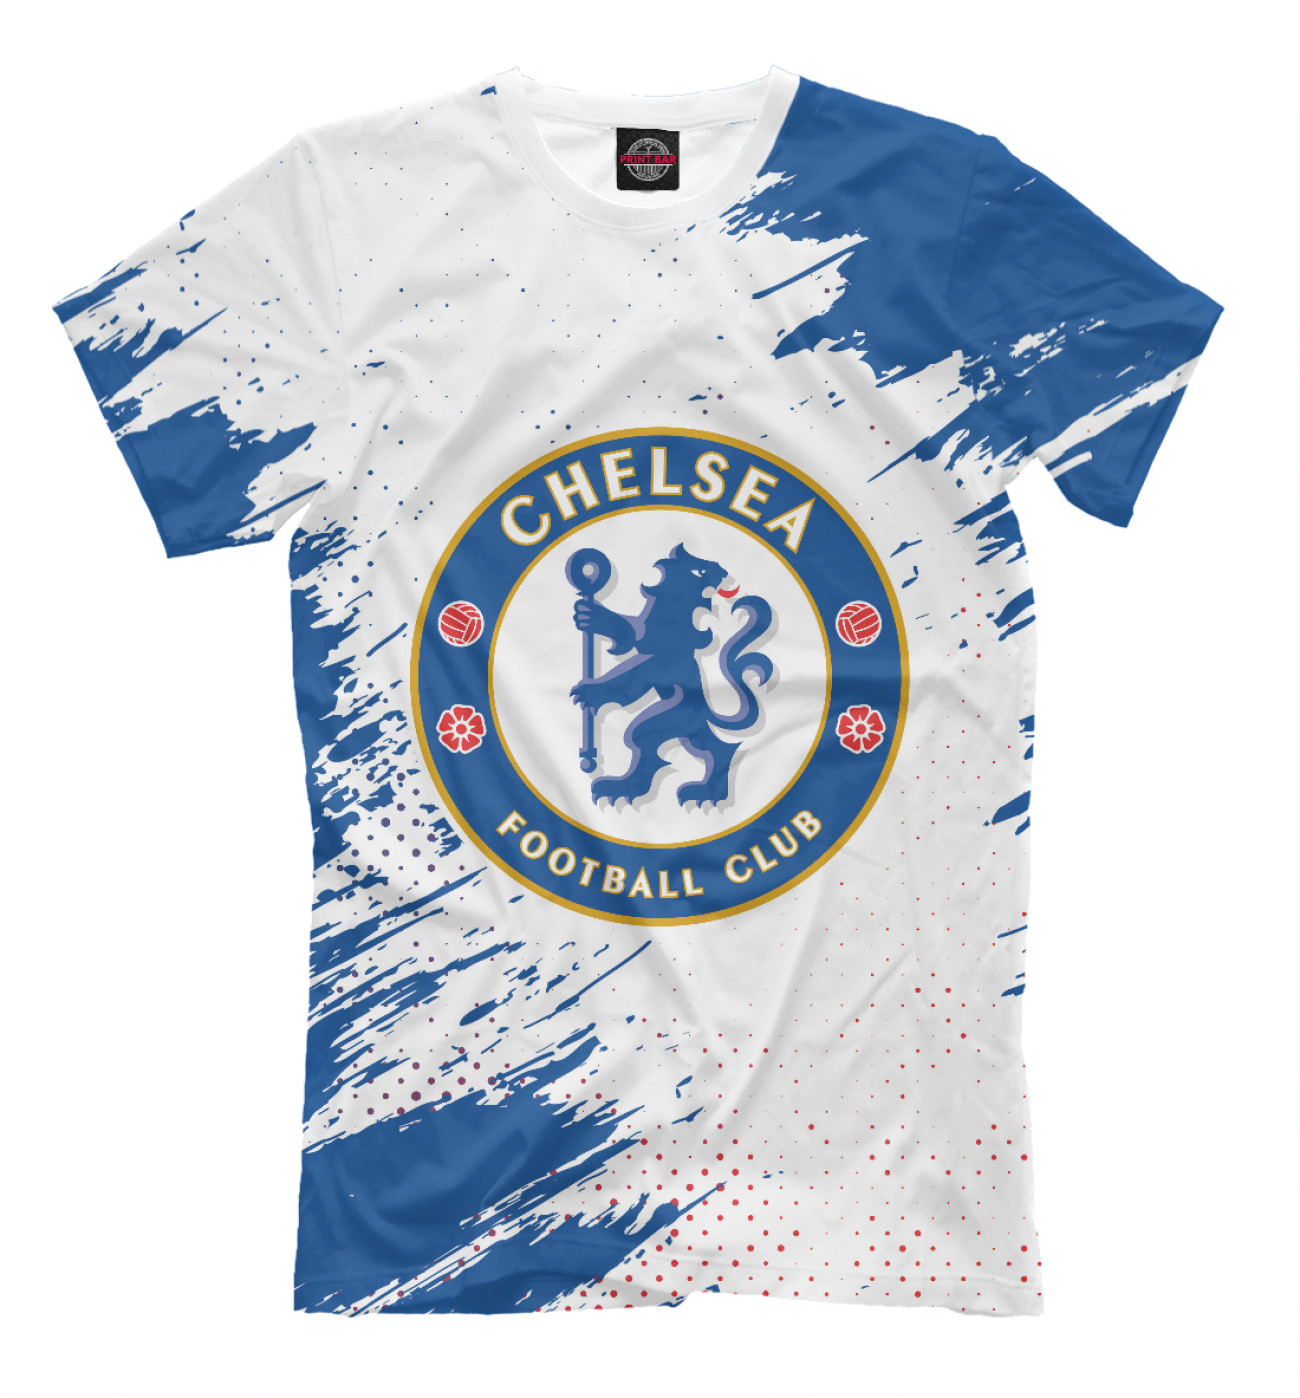 Мужская Футболка Chelsea F.C. / Челси, артикул: CHL-620217-fut-2